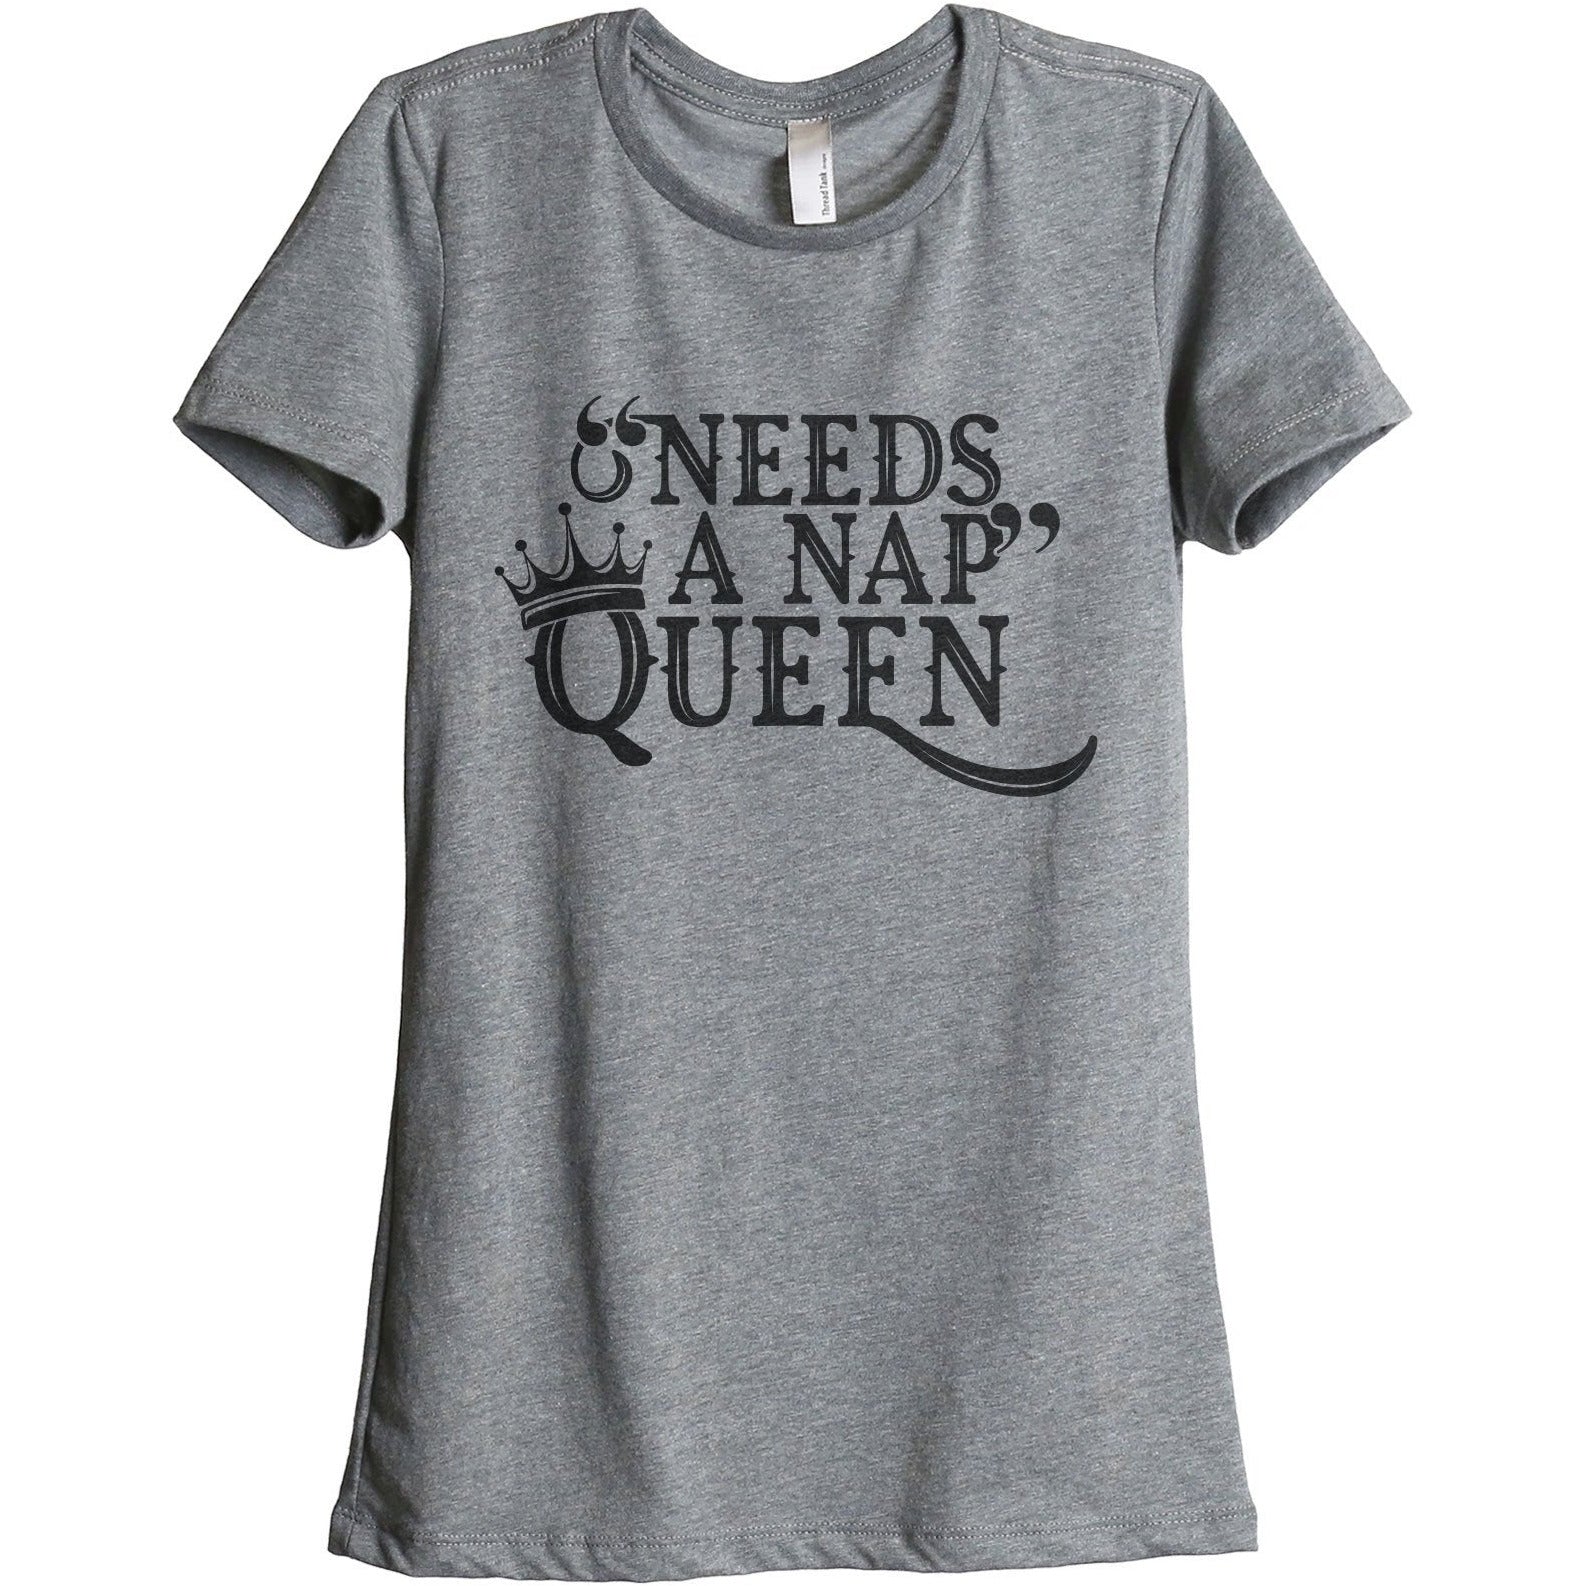 Needs A Nap Queen Women's Relaxed Crew T-Shirt Heather Gray Shirt Image